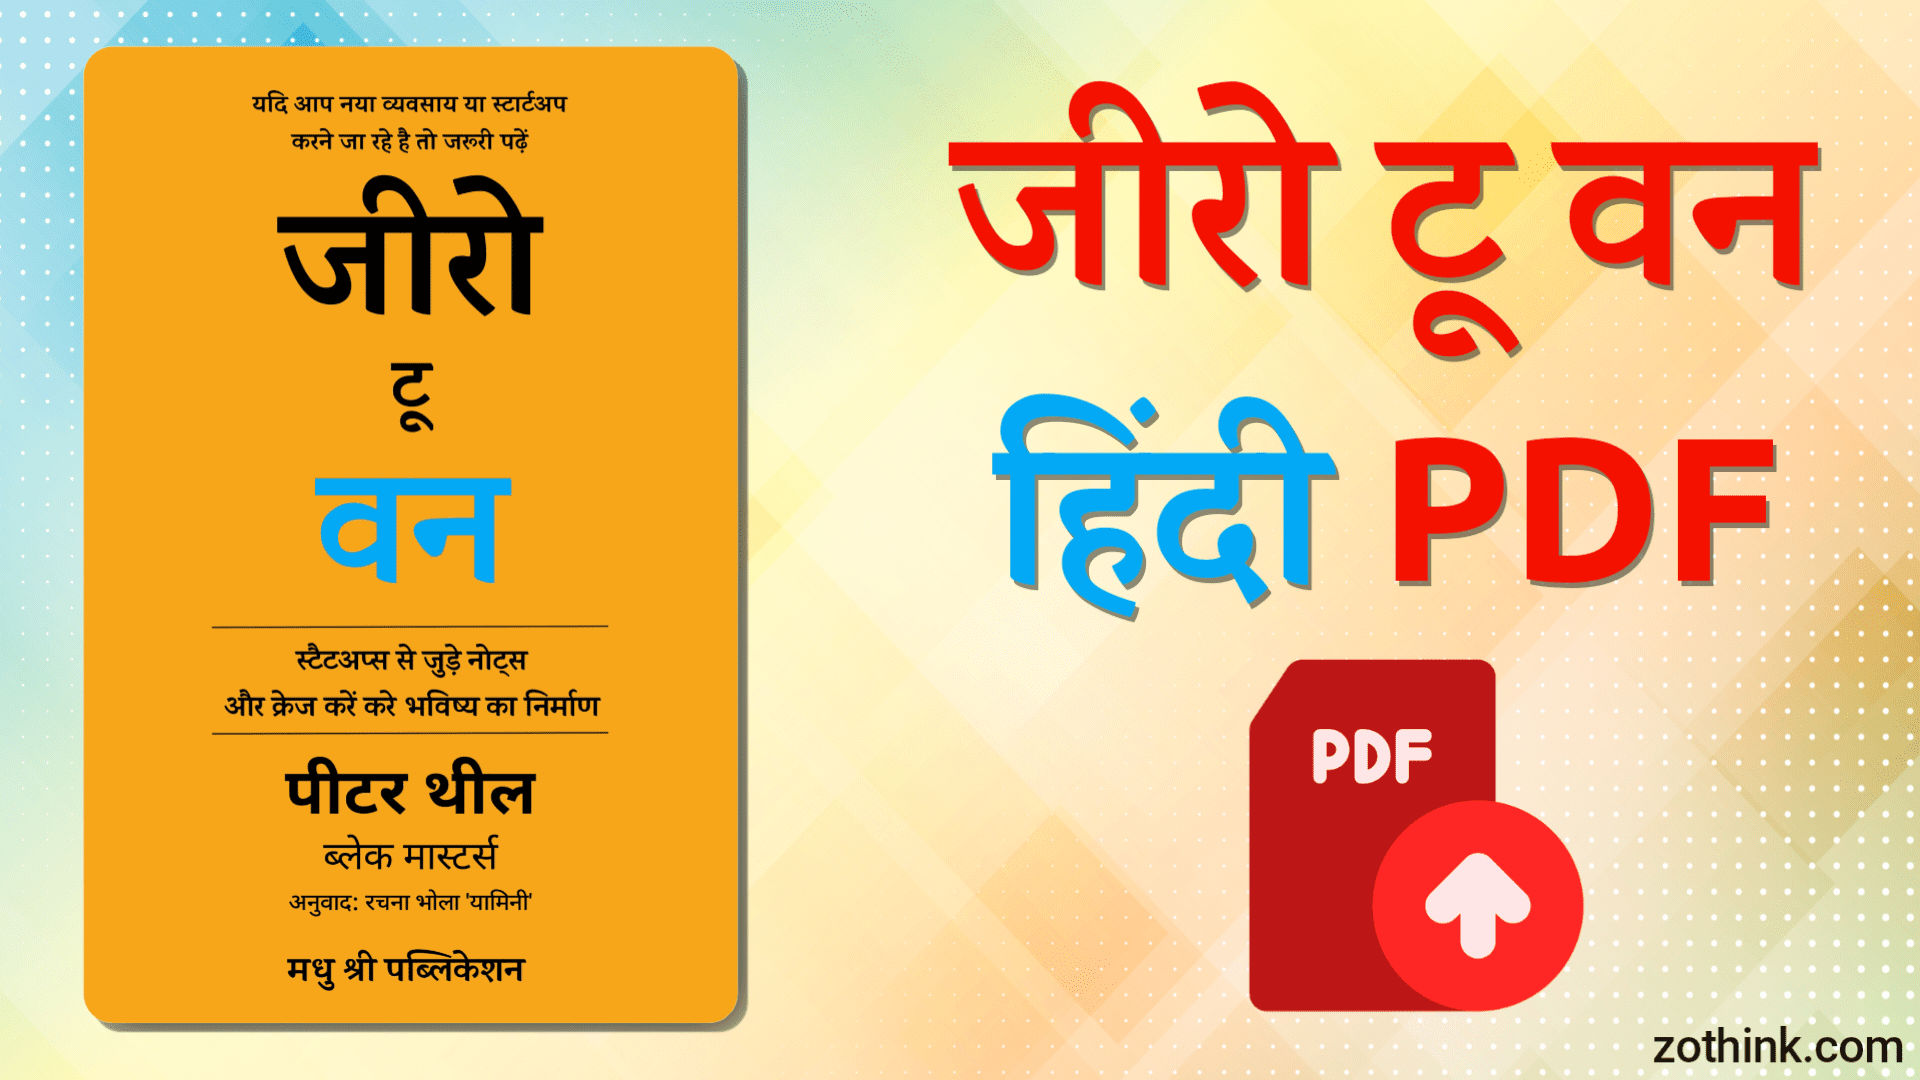 जीरो टू वन पुस्तक हिंदी PDF | Zero to One Book Hindi PDF